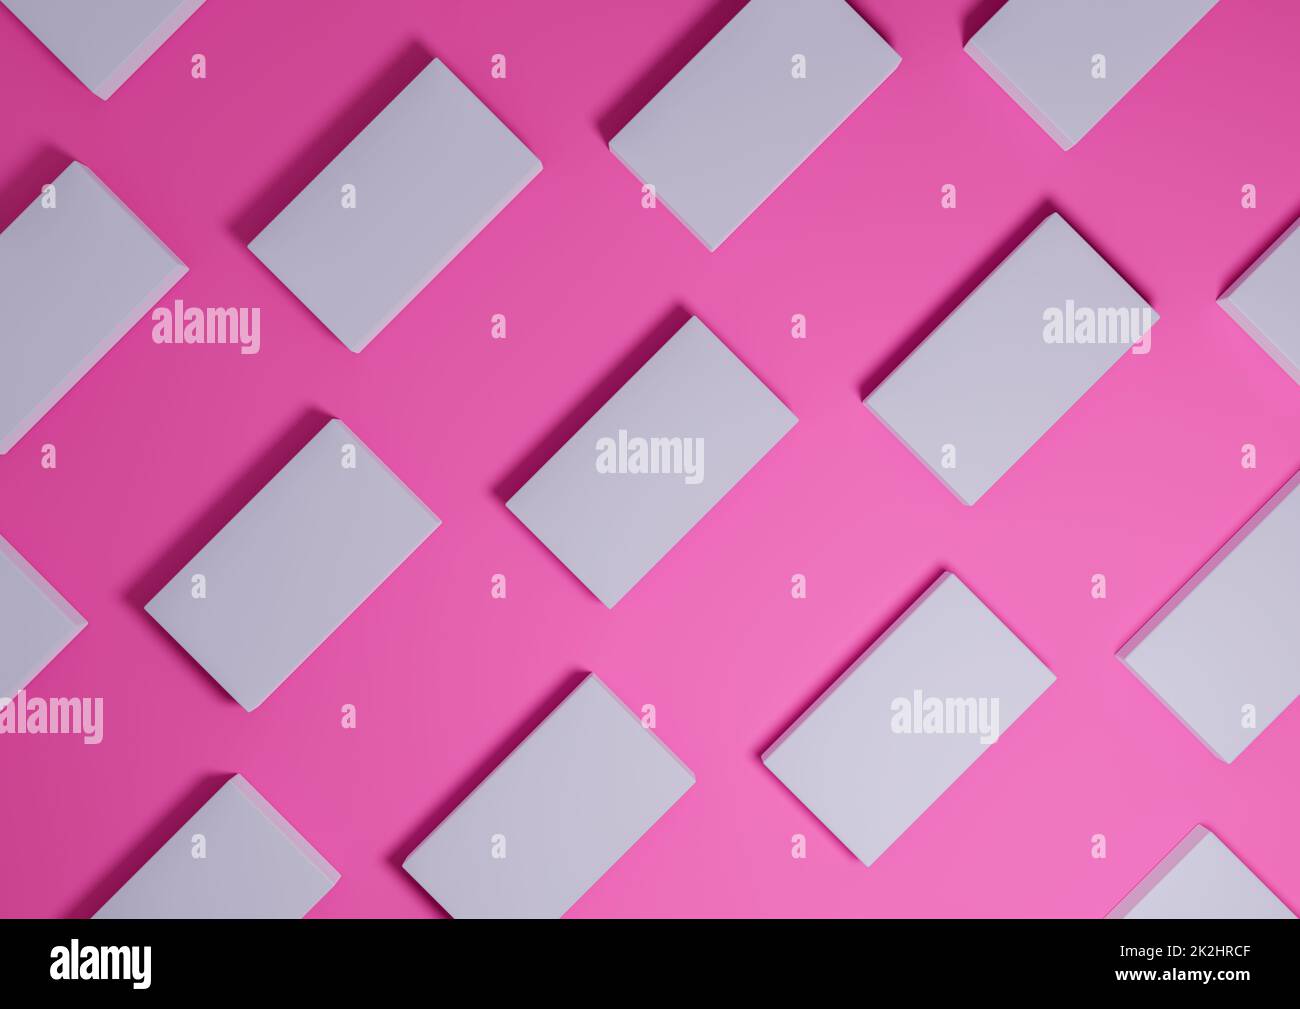 Magenta brillante, rosa neon, rendering 3D visualizzazione minima, semplice e moderna dall'alto del prodotto a giacitura piatta da sopra lo sfondo con supporti quadrati ripetitivi in un motivo Foto Stock